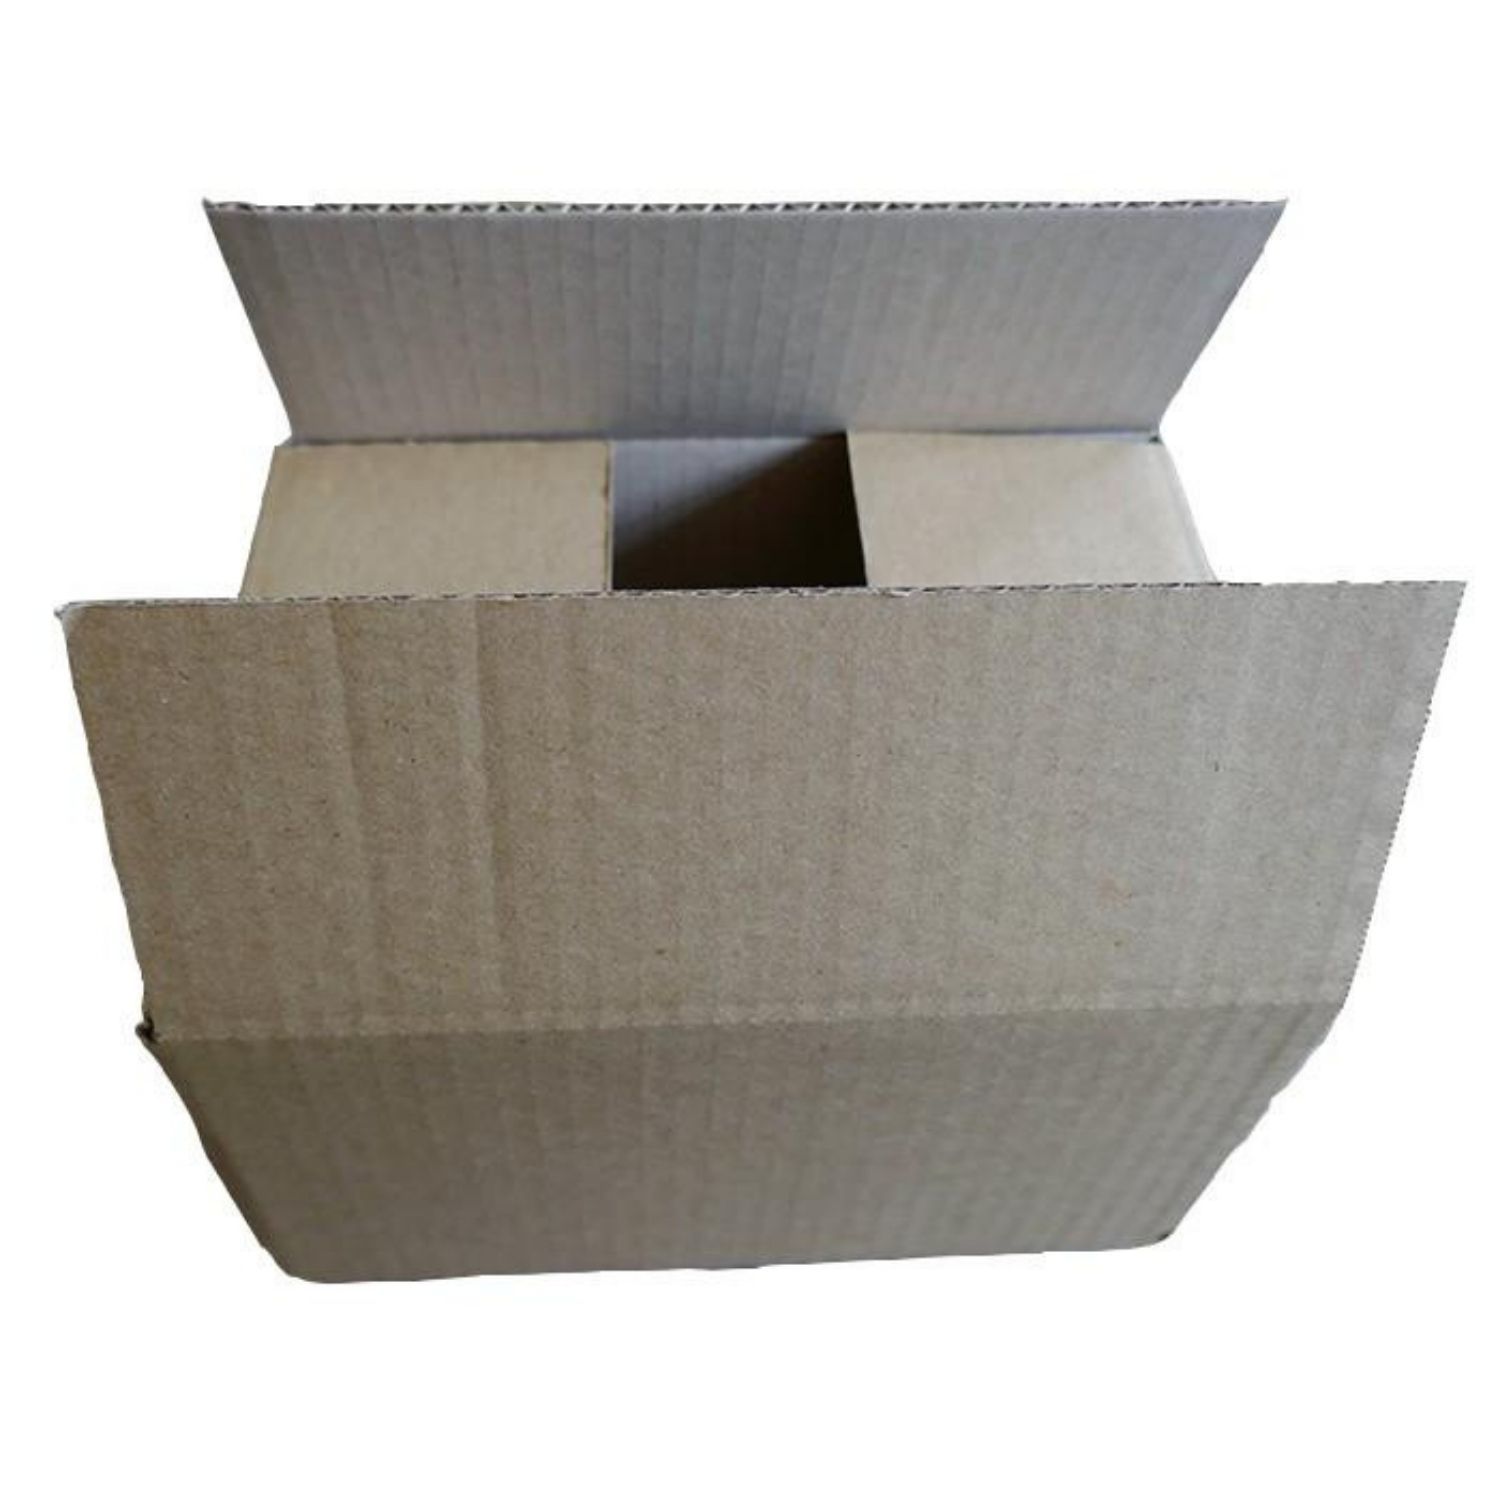 Forfait carton et boite de déménagement avec papier d'emballage